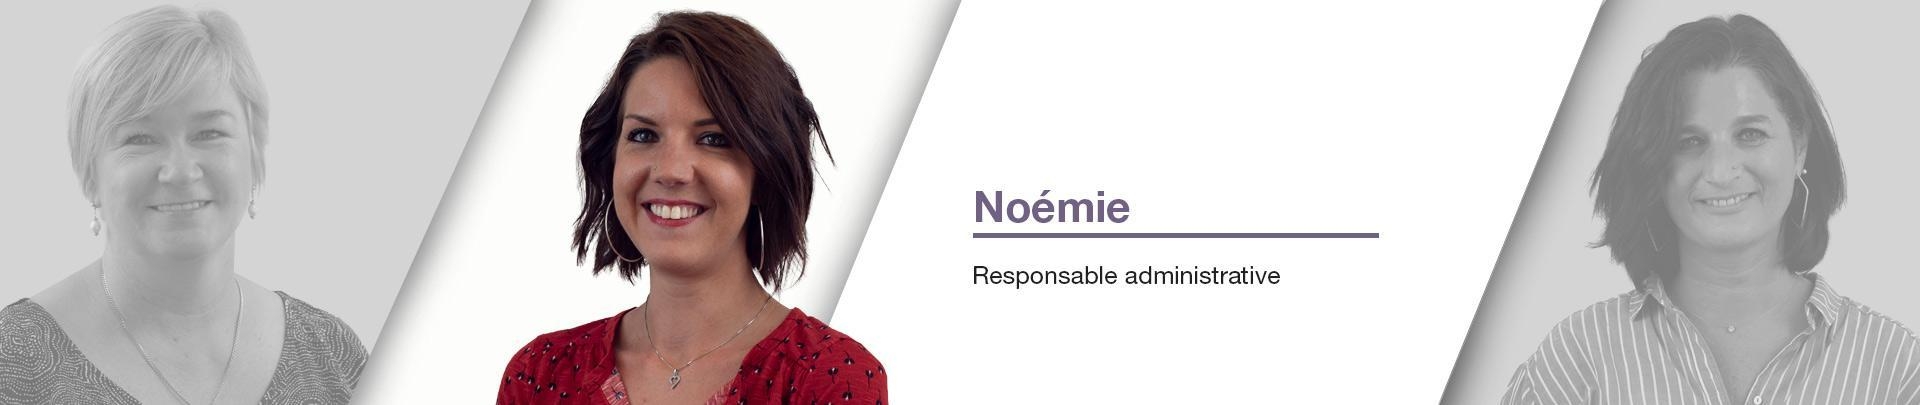 Noémie  - Responsable administrative